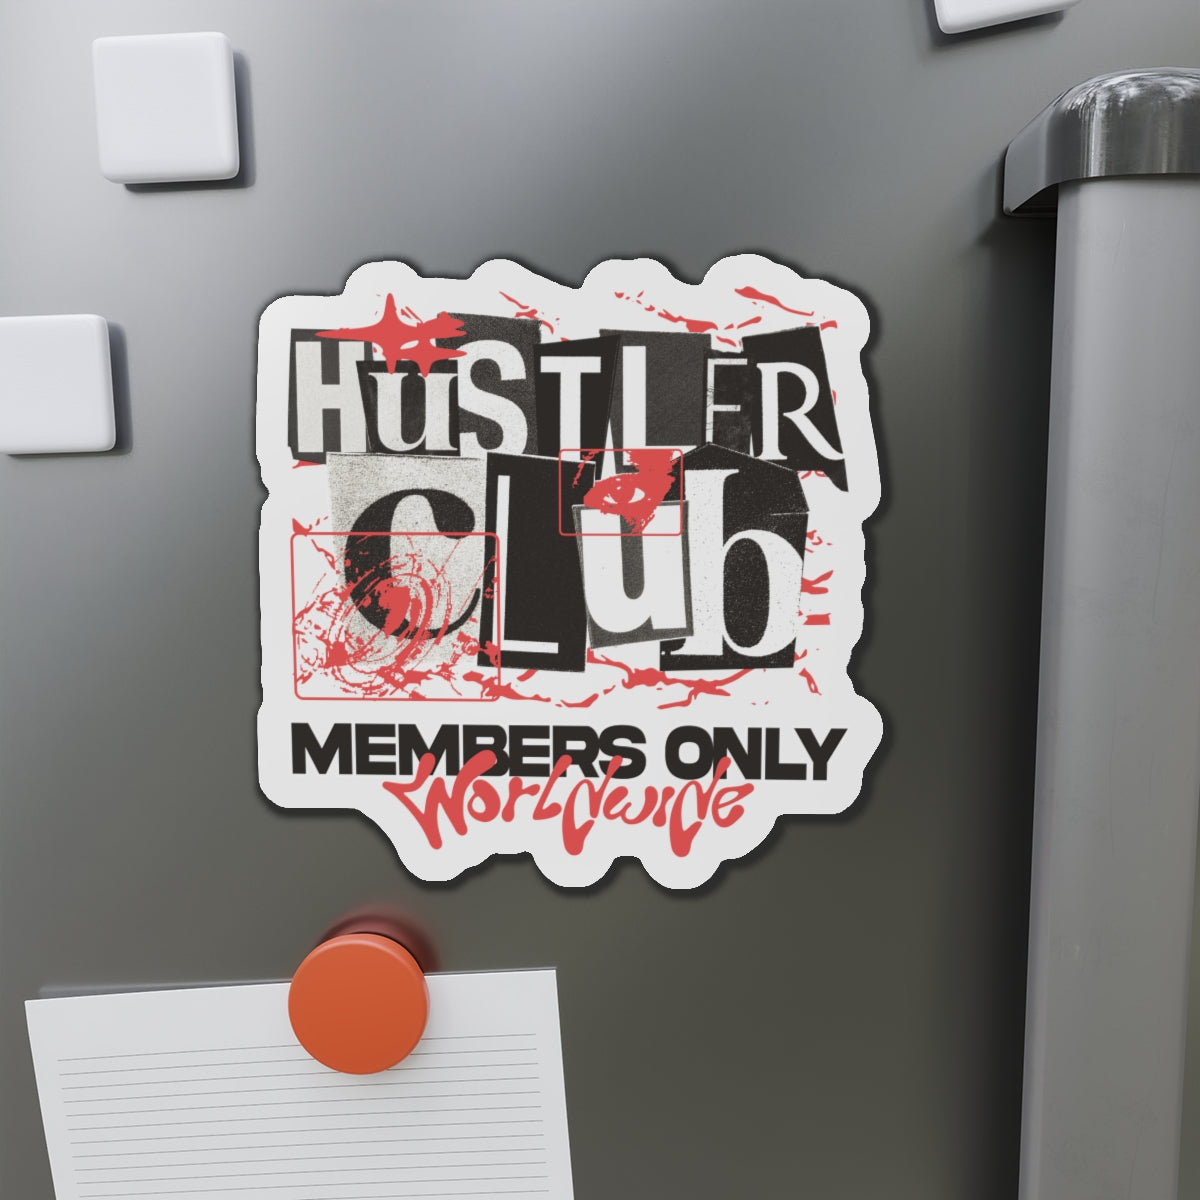 Members Only (Die-Cut Magnets)